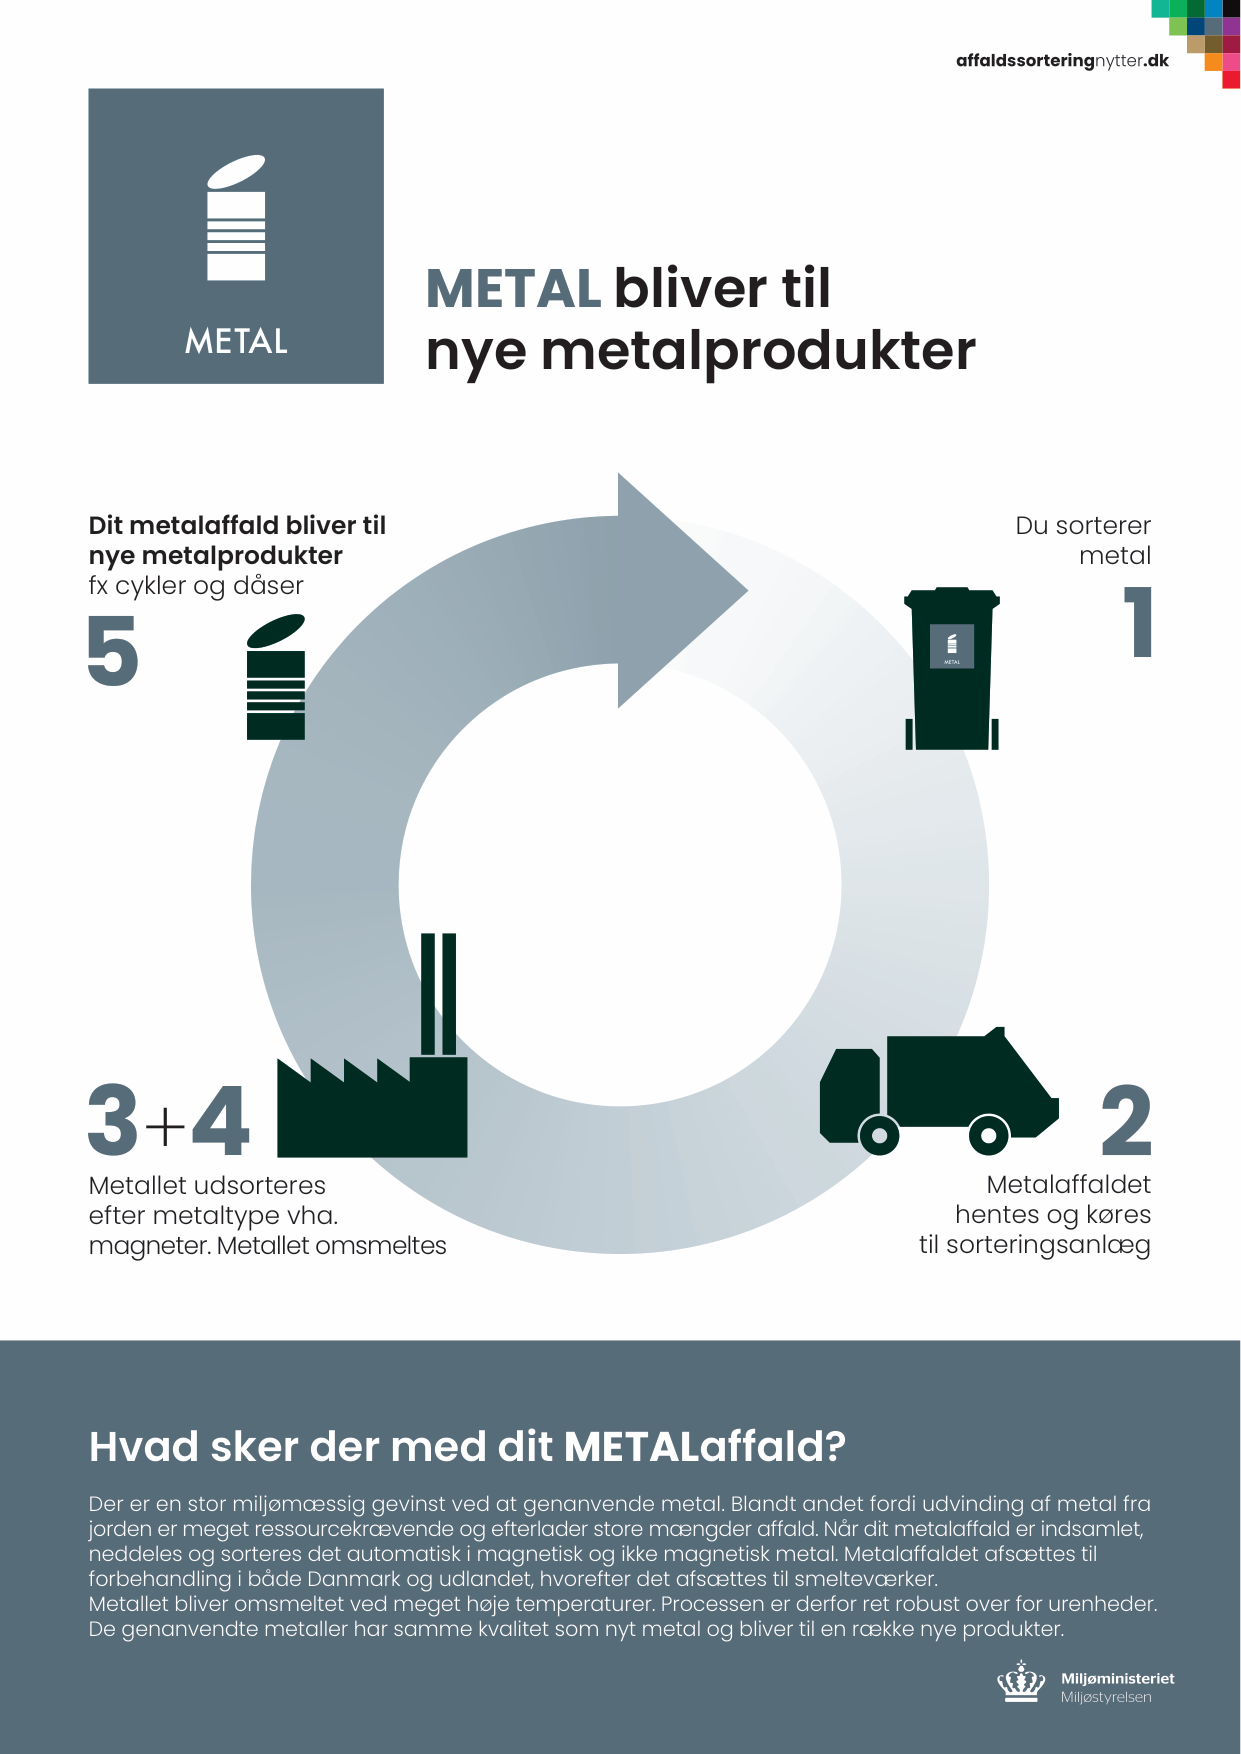 Plakat der viser affaldets rejse - metalaffald bliver til nye metalprodukter